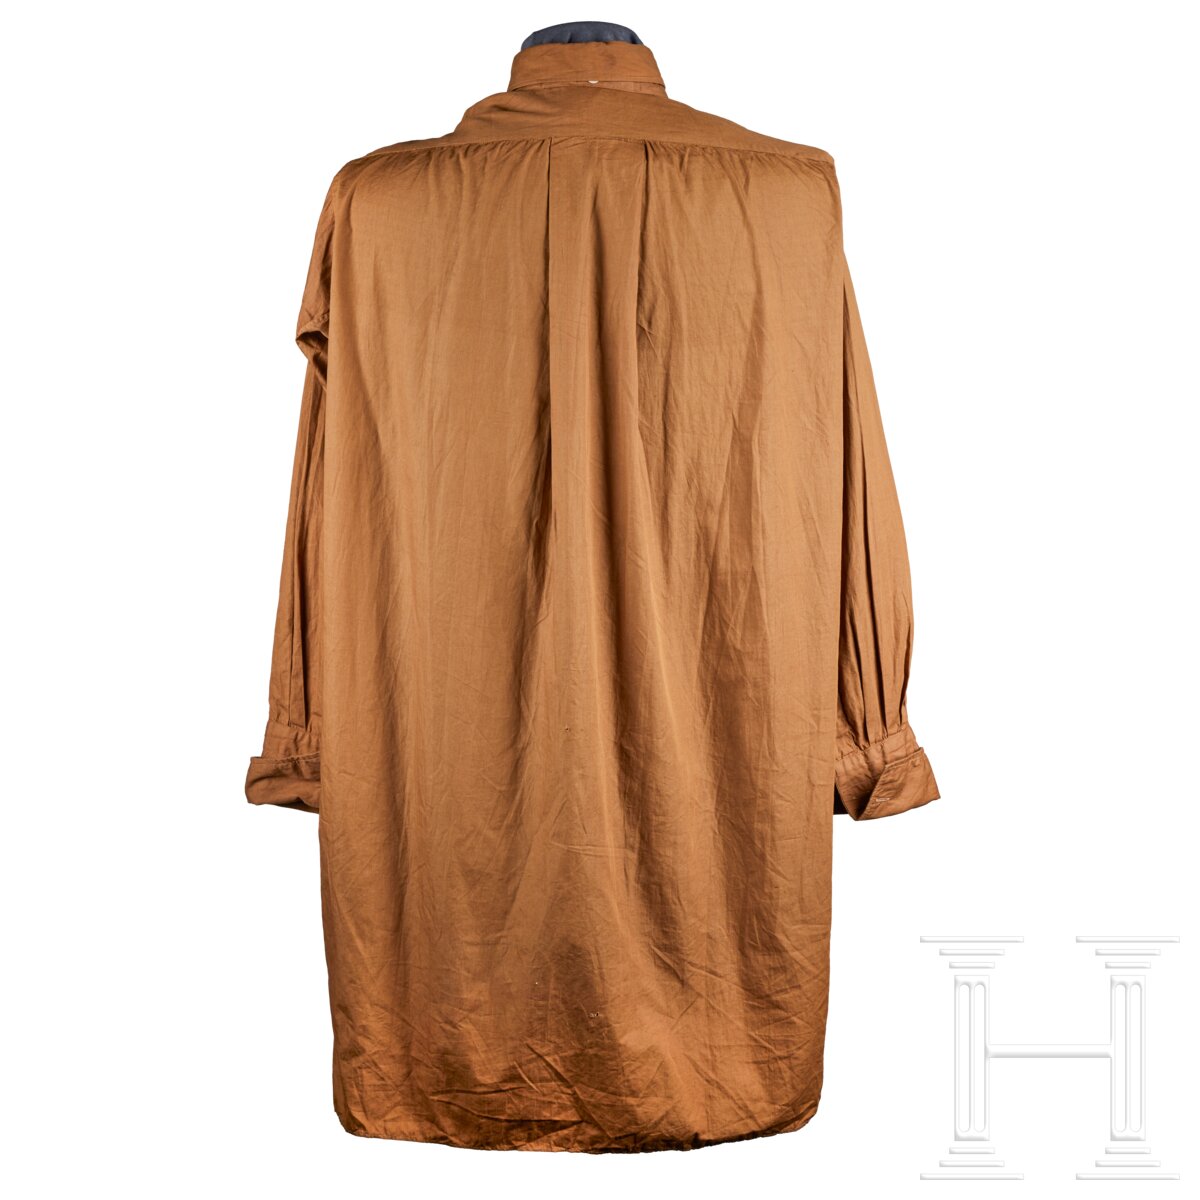 A Brown Uniform Shirt for SS-Verfügungstruppe - Image 2 of 3